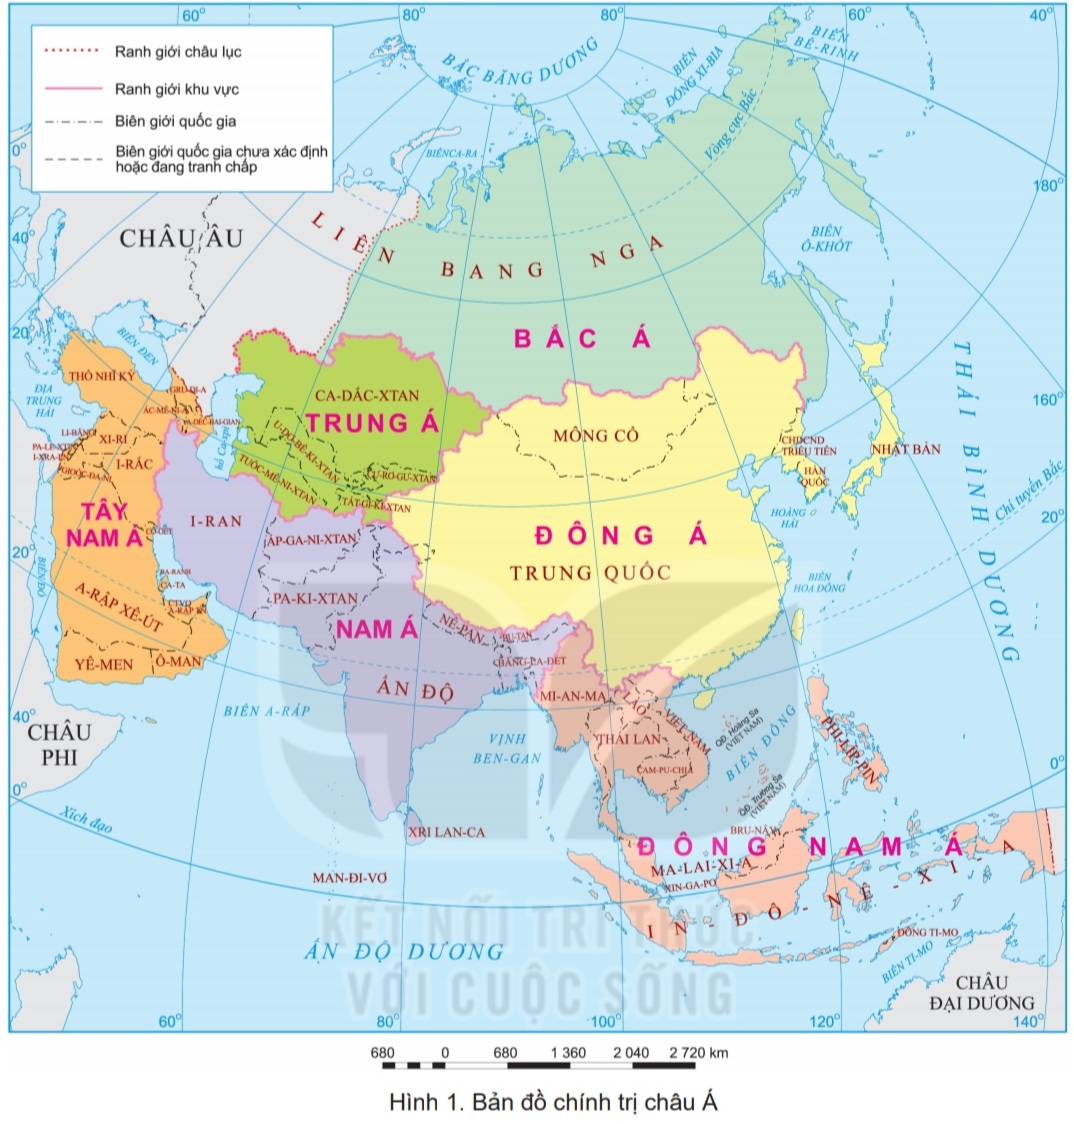 Bản đồ chính trị của châu Á, Phân chia khu vực của châu á